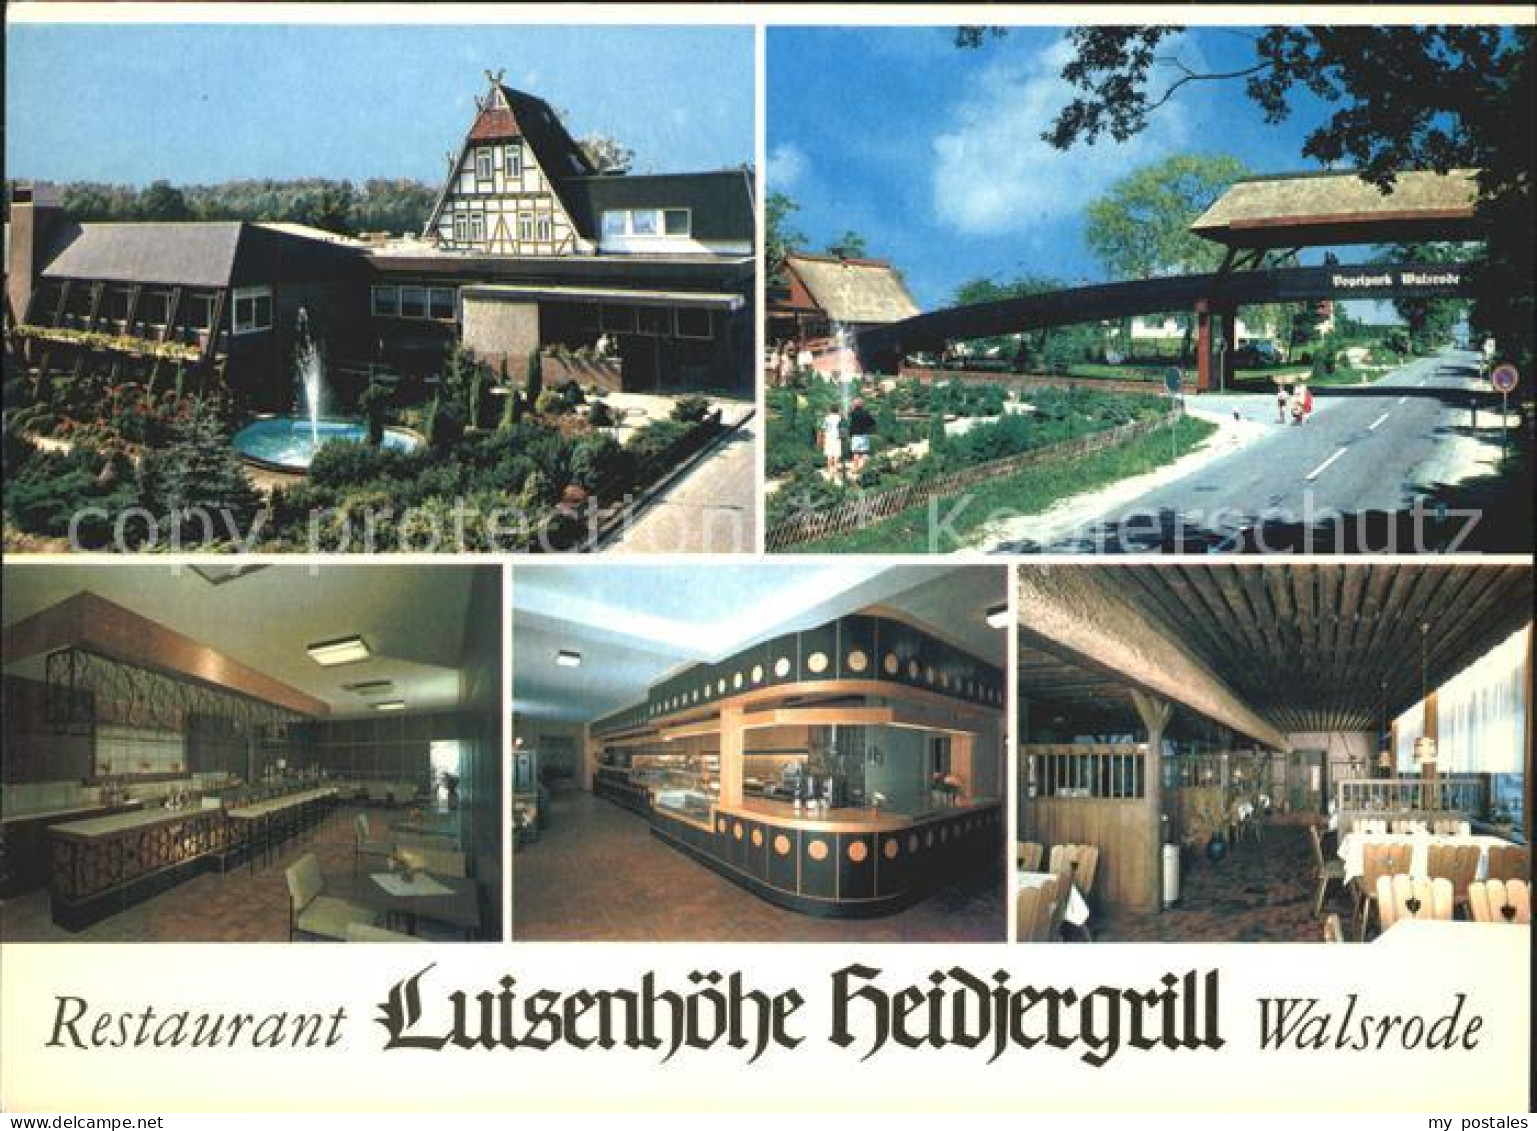 71944698 Walsrode Lueneburger Heide Restaurant Luisenhoehe Heidjergrill Walsrode - Walsrode